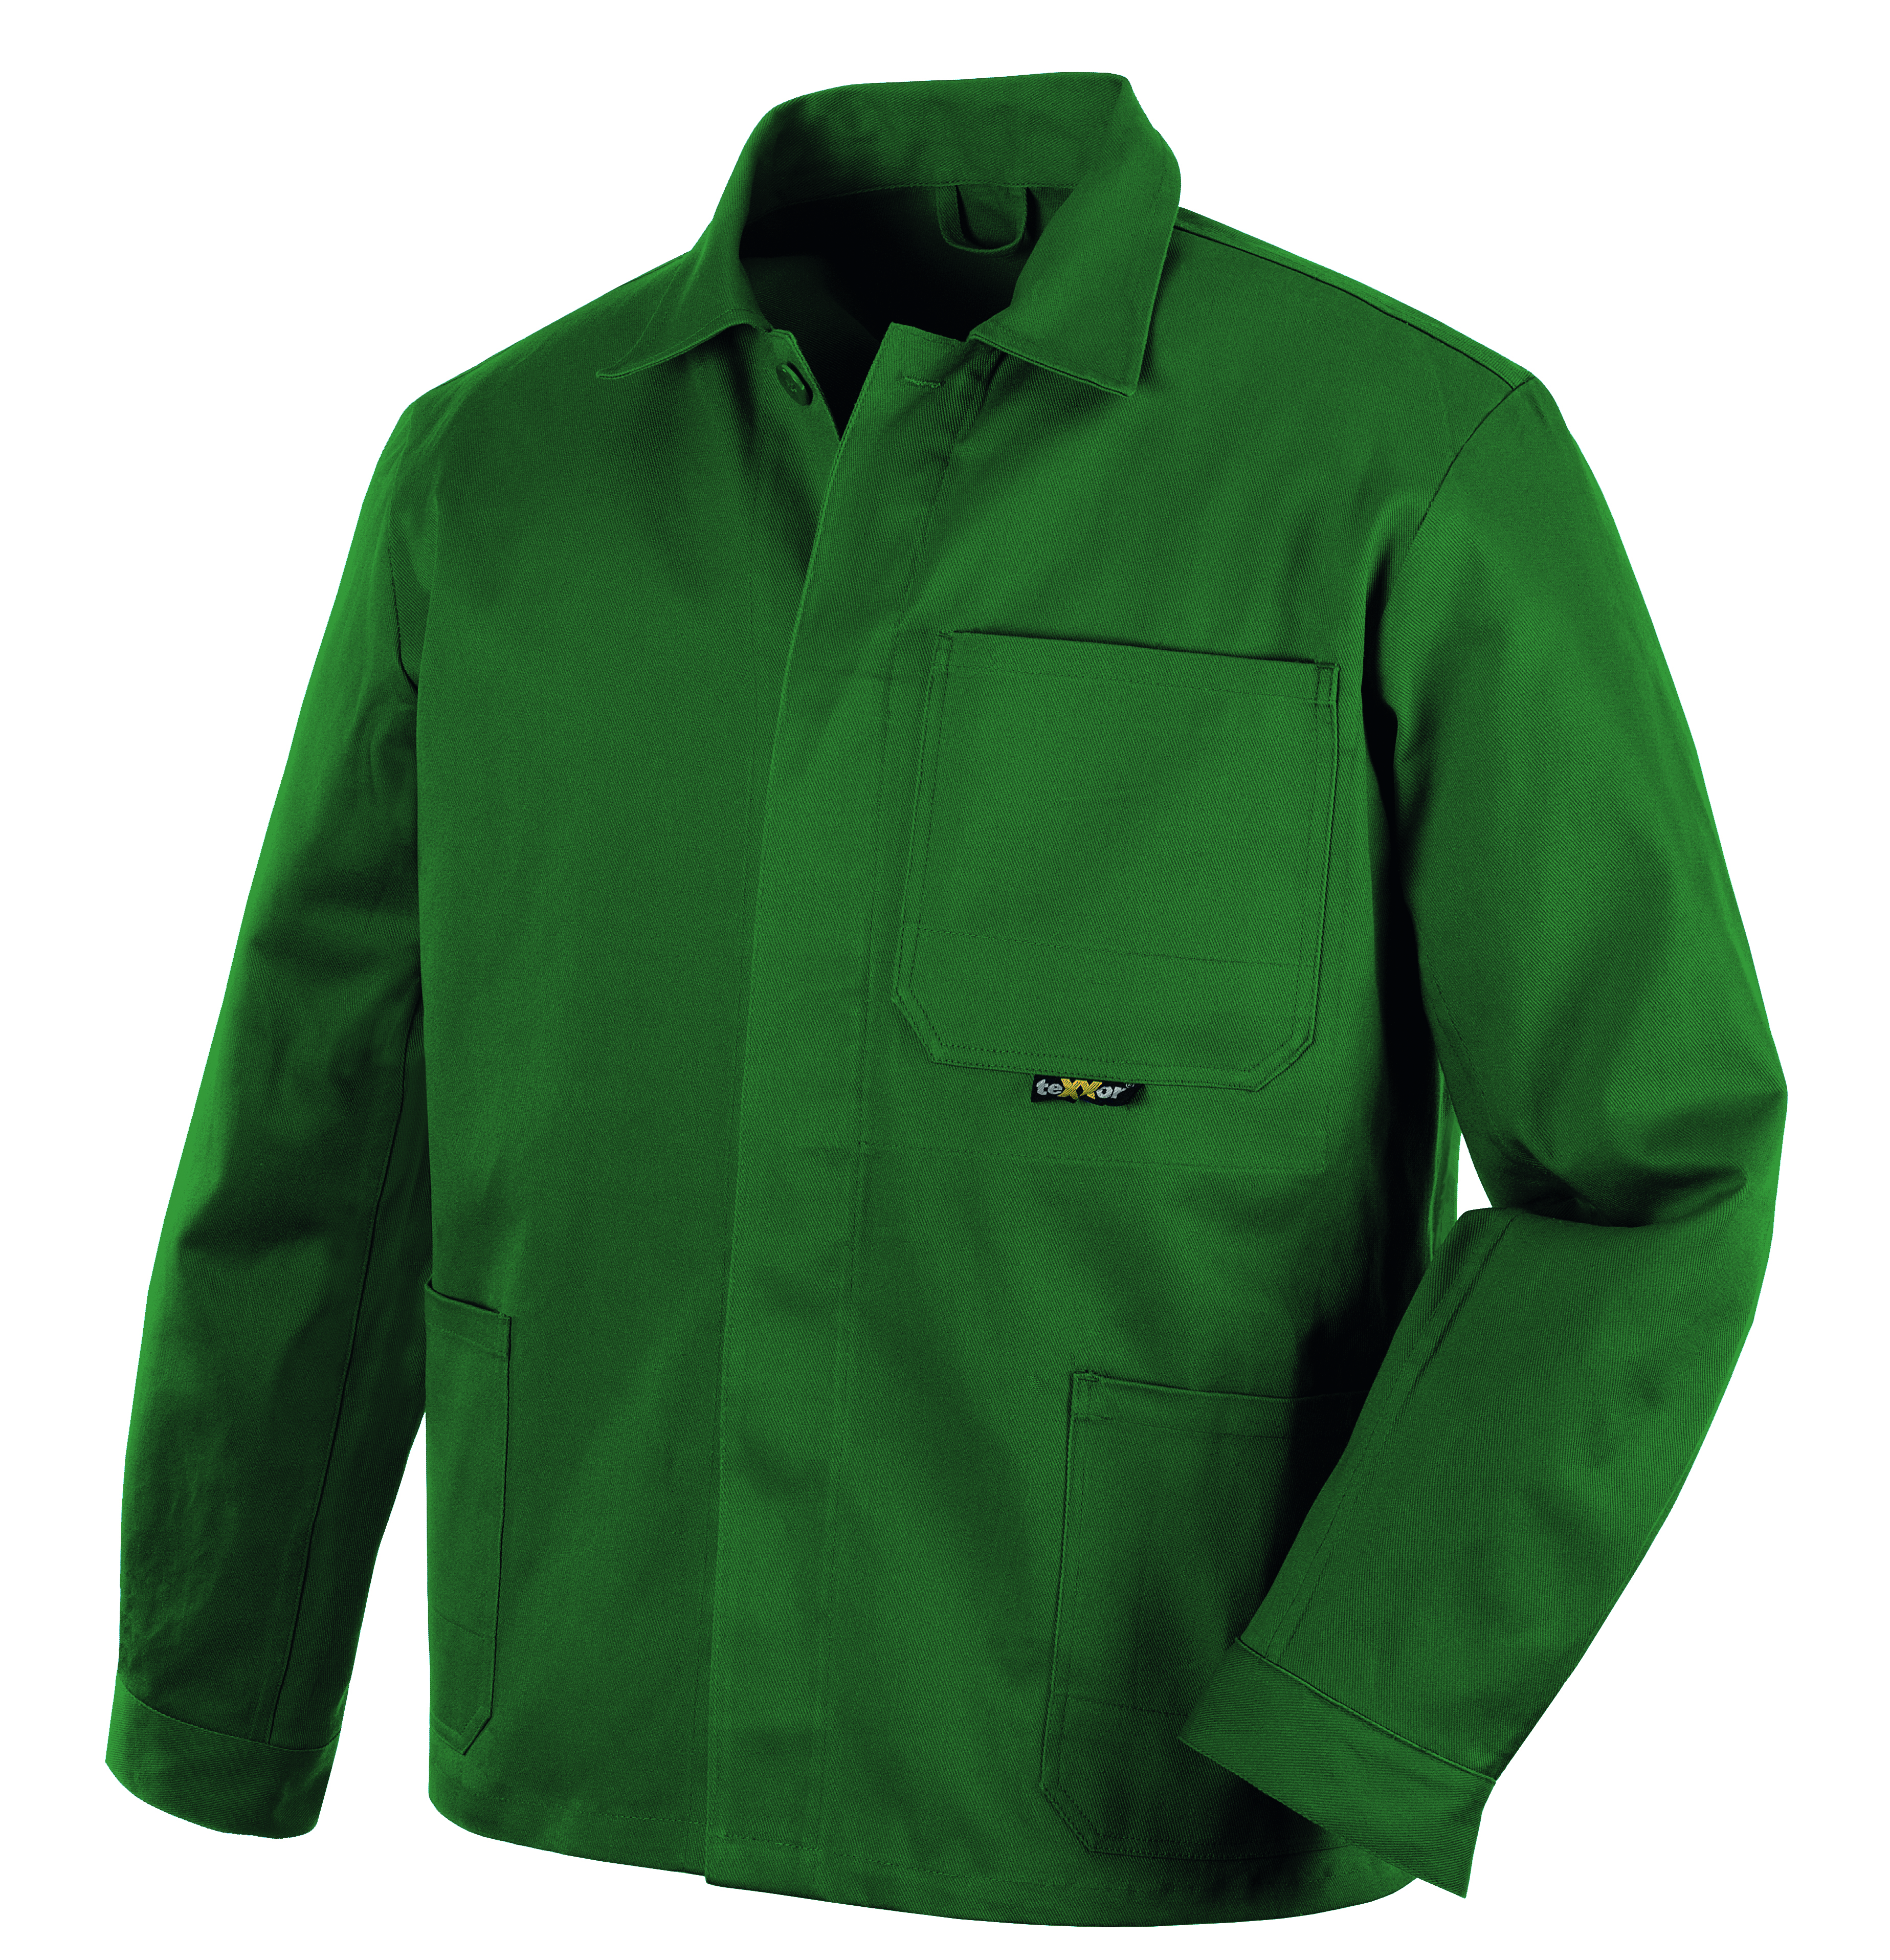 BIG TEXXOR Langjacke Arbeitsjacke Berufsjacke Schutzjacke Arbeitskleidung Berufskleidung 290g, grün